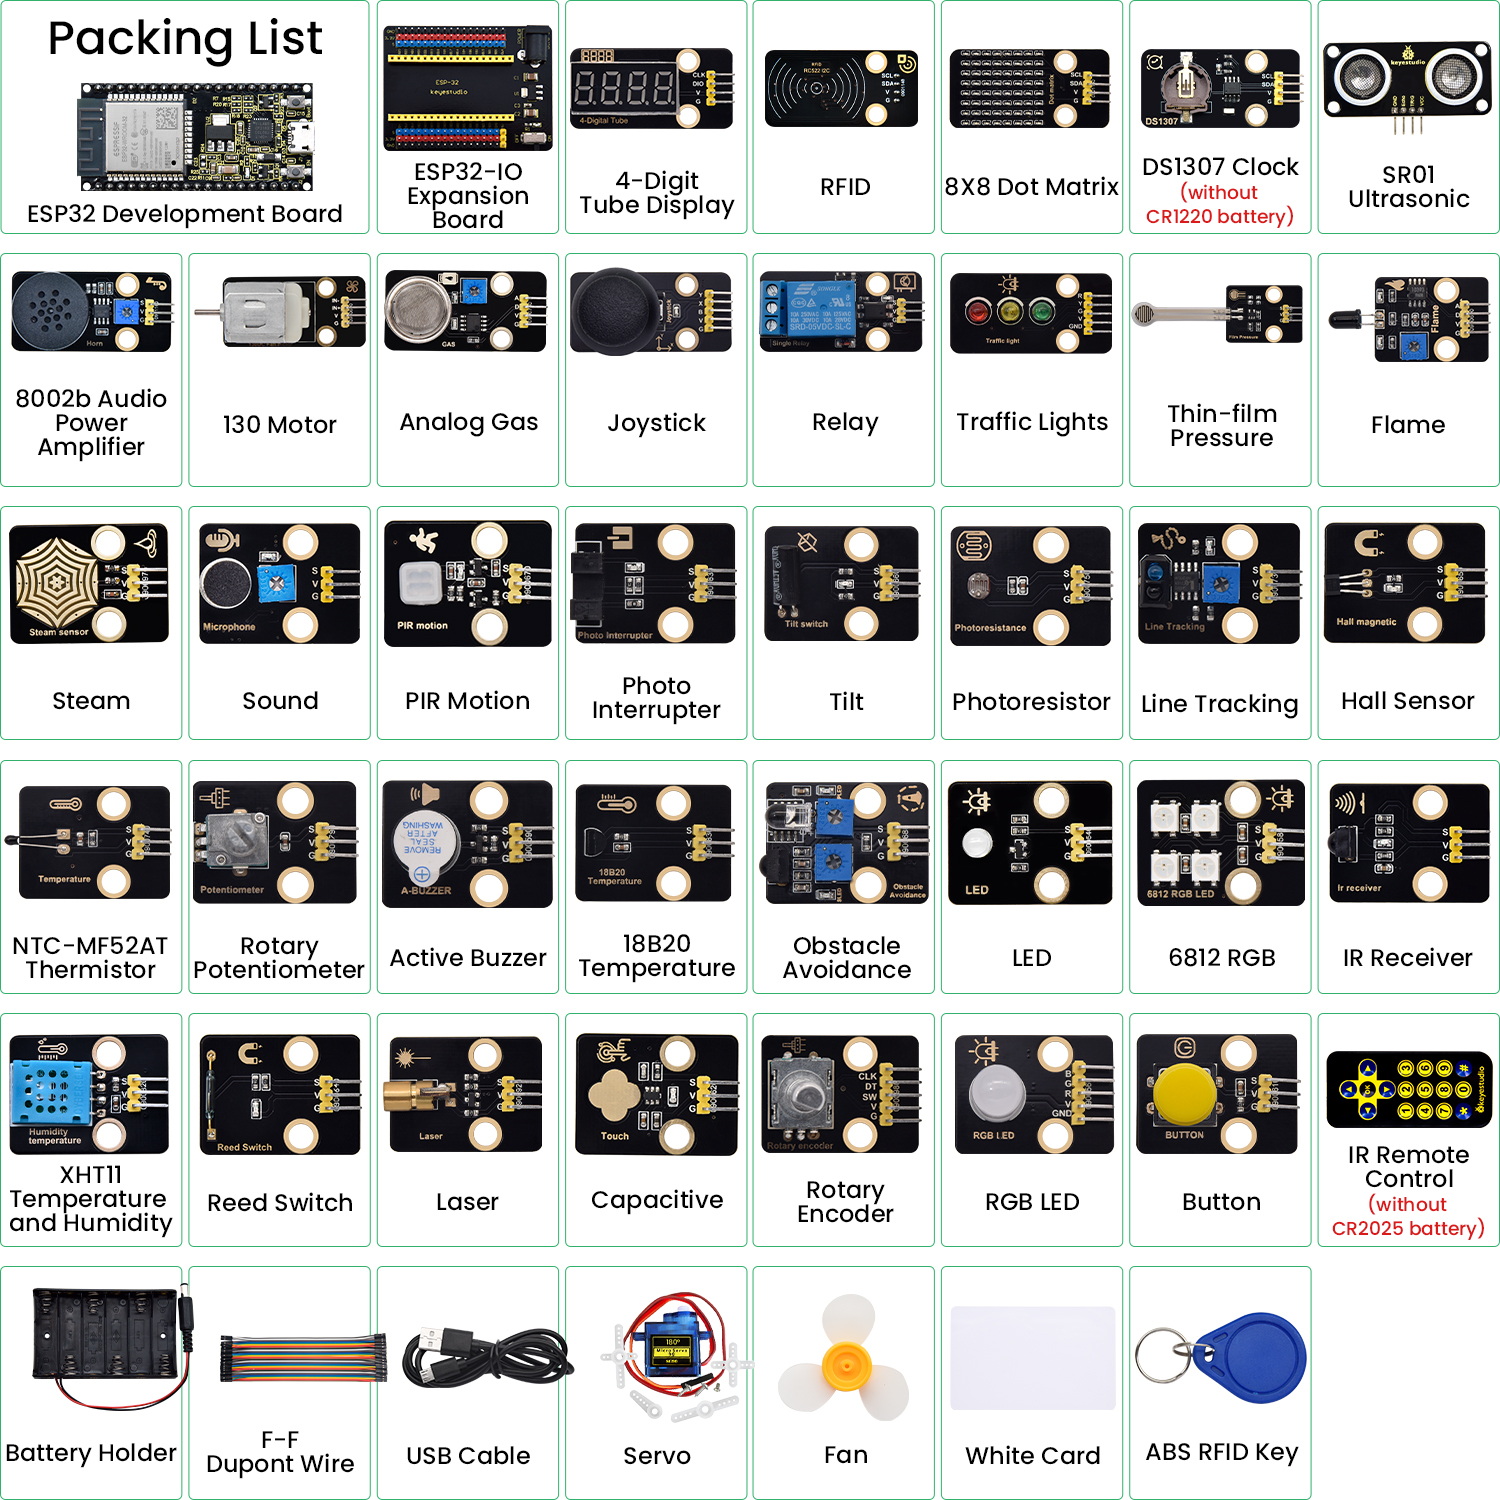 Keyestudio ESP32 Learning Sensor Kit Complete Edition Starter modules Kit  With ESP32 Board STEM